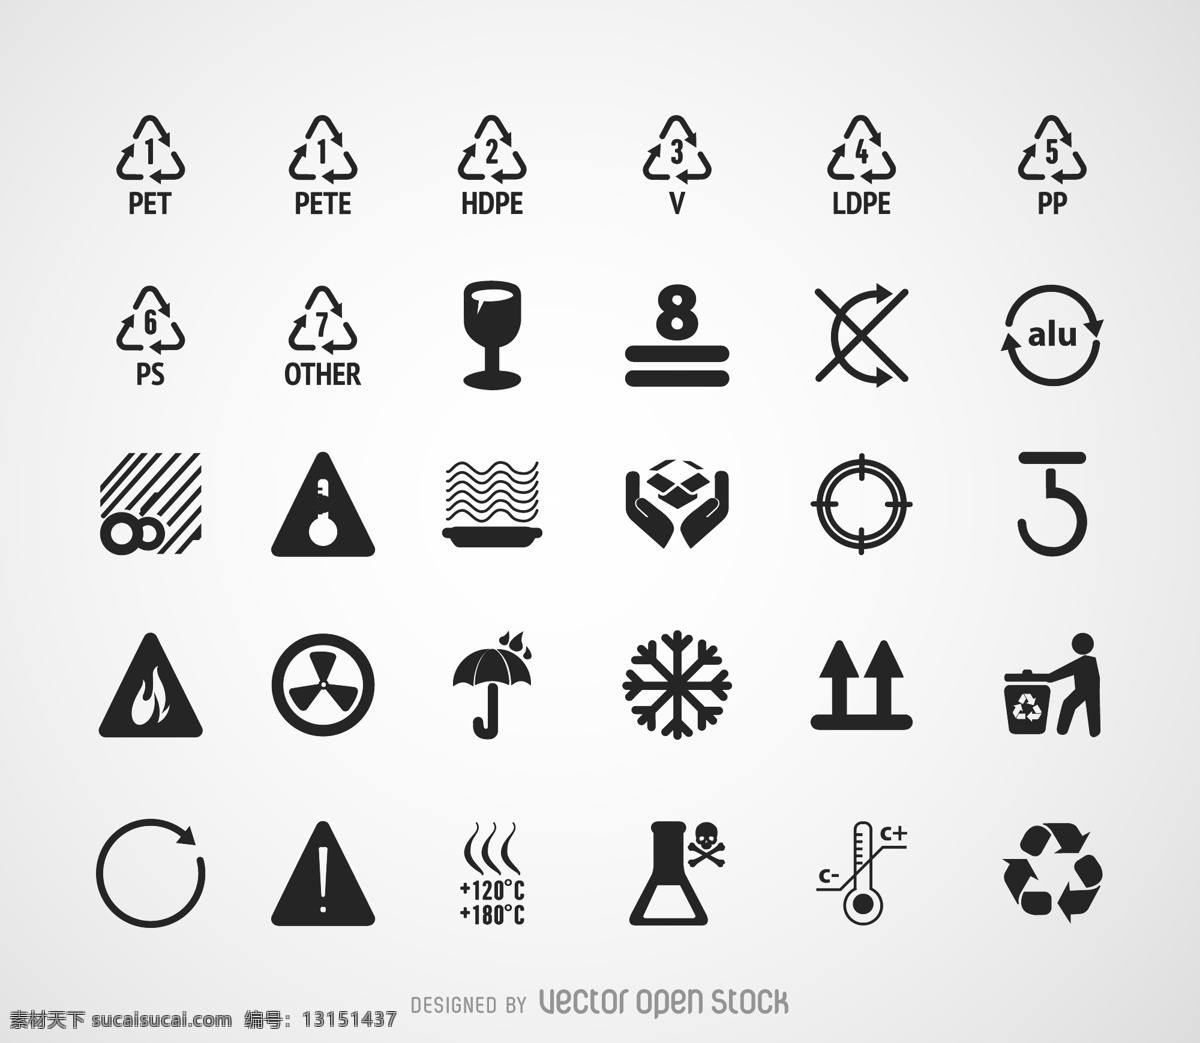 注意事项 logo logo设计 矢量素材 环境保护 可回收利用 核辐射 易碎物品 易燃物品 高温物品 化学物品